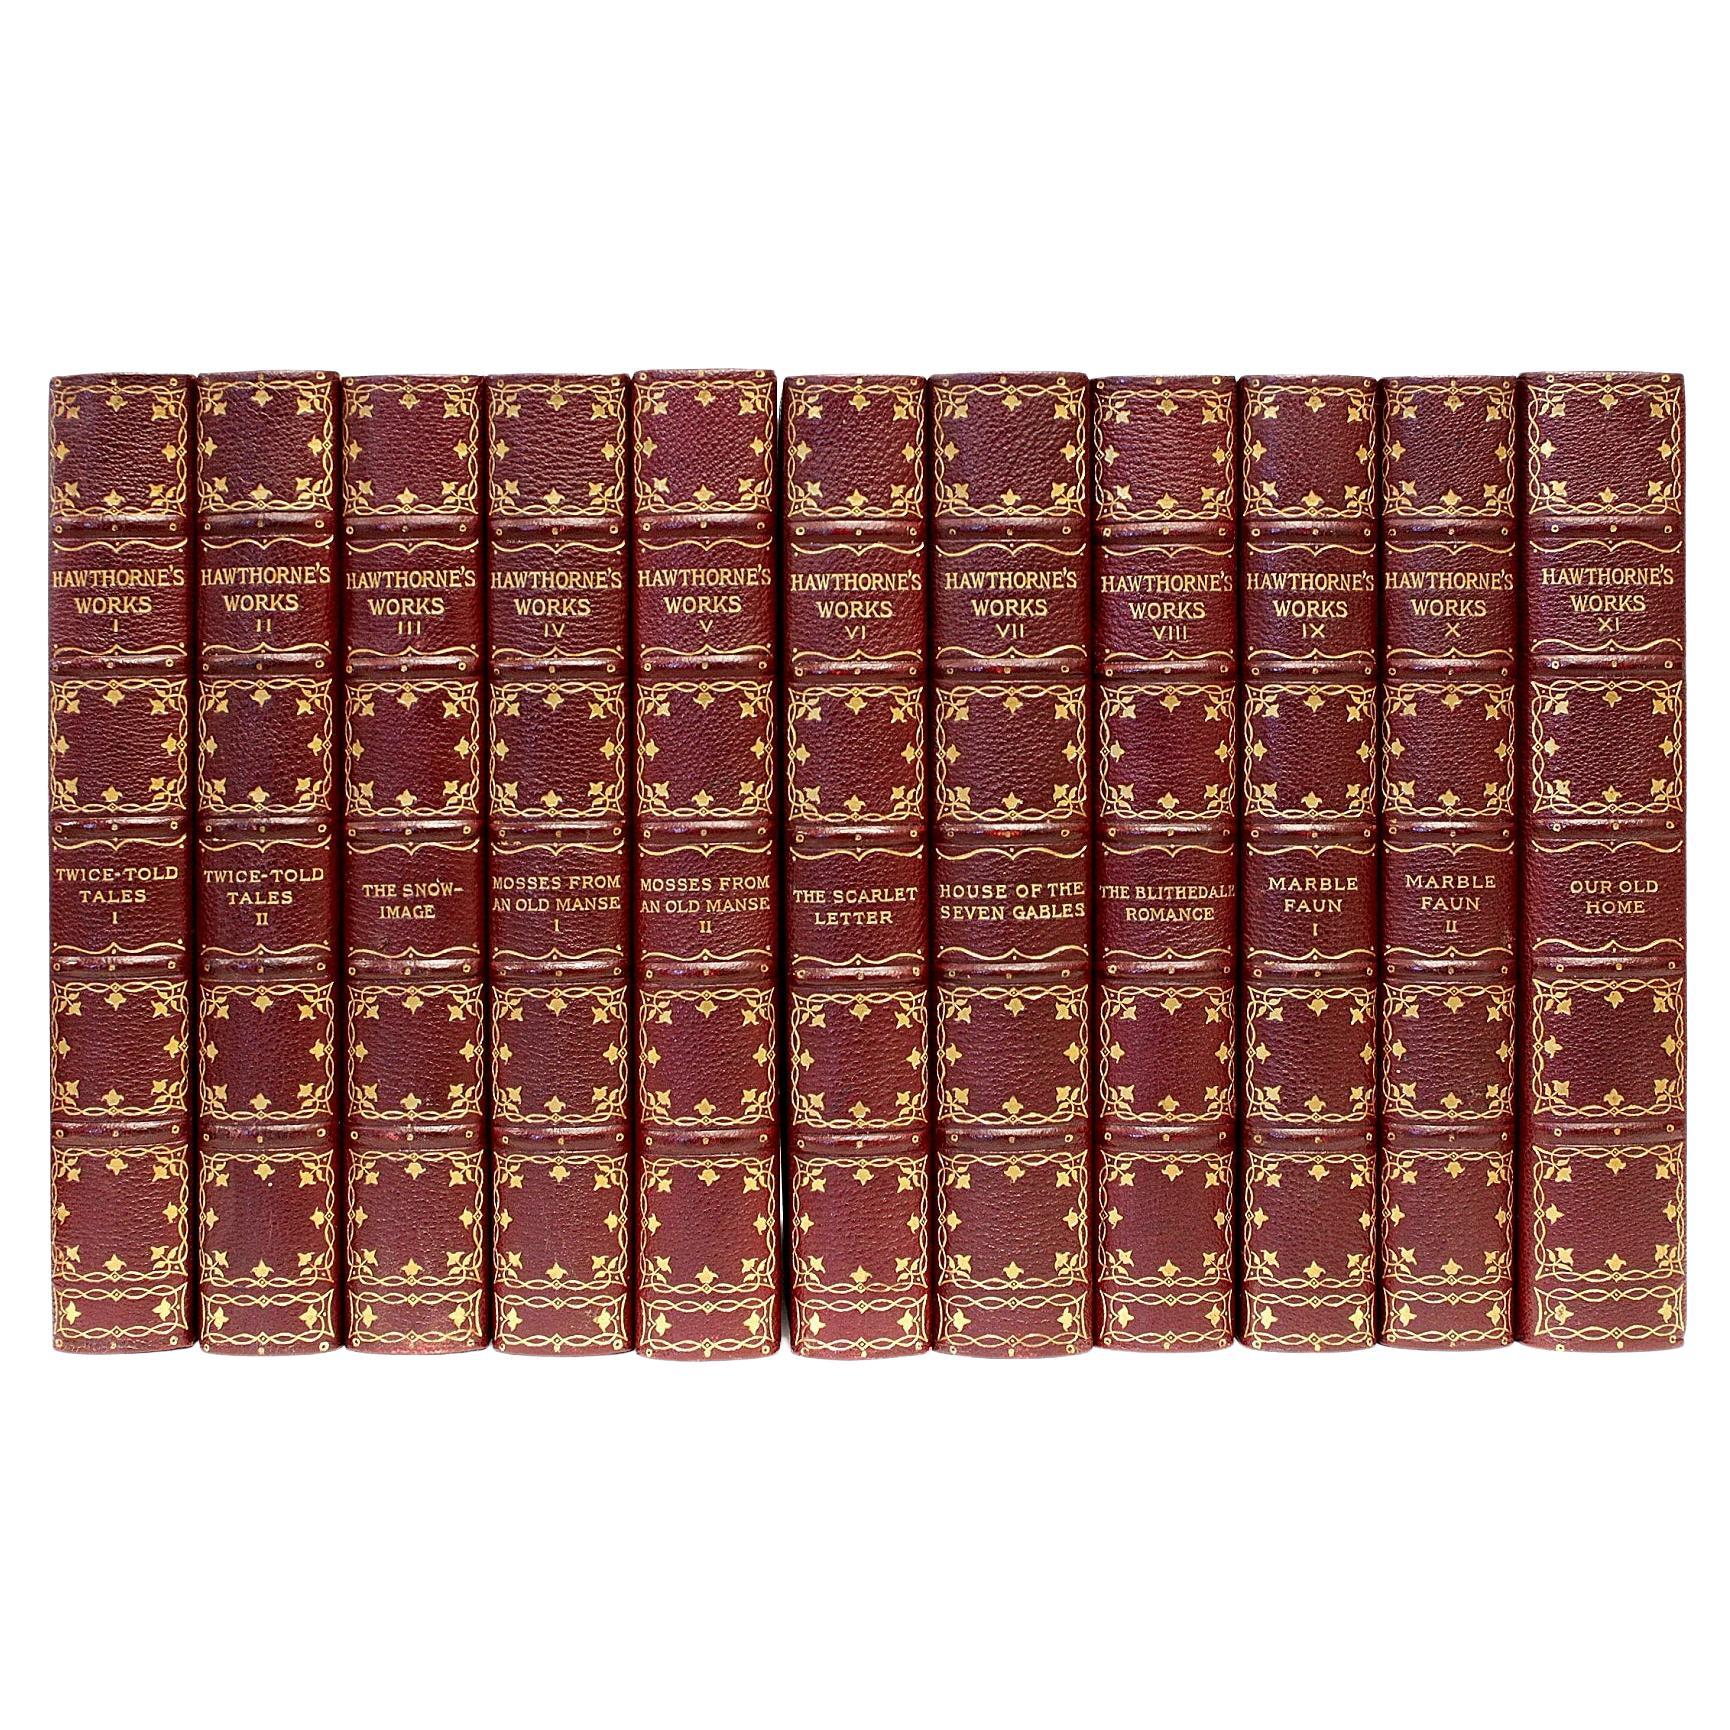 Œuvres complètes de Nathaniel Hawthorne, 22 volumes, édition Old Manse